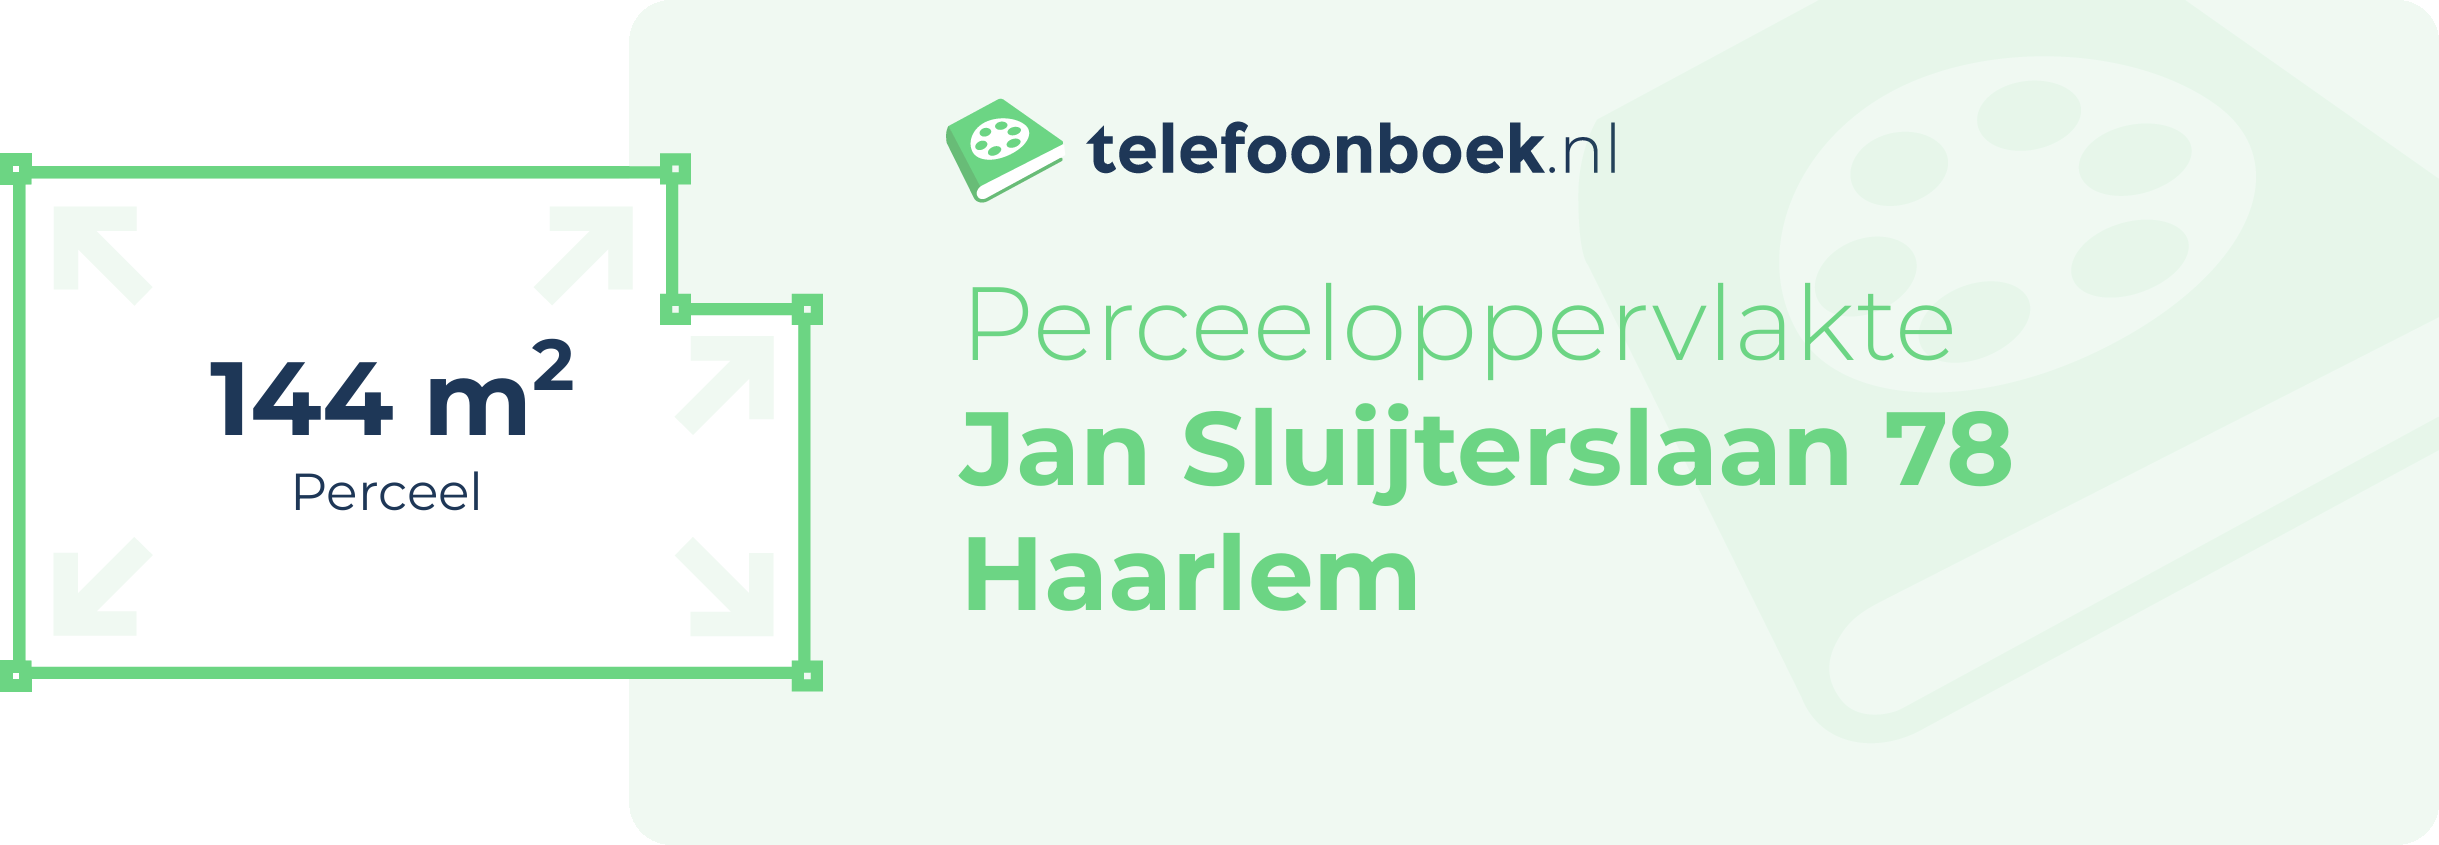 Perceeloppervlakte Jan Sluijterslaan 78 Haarlem